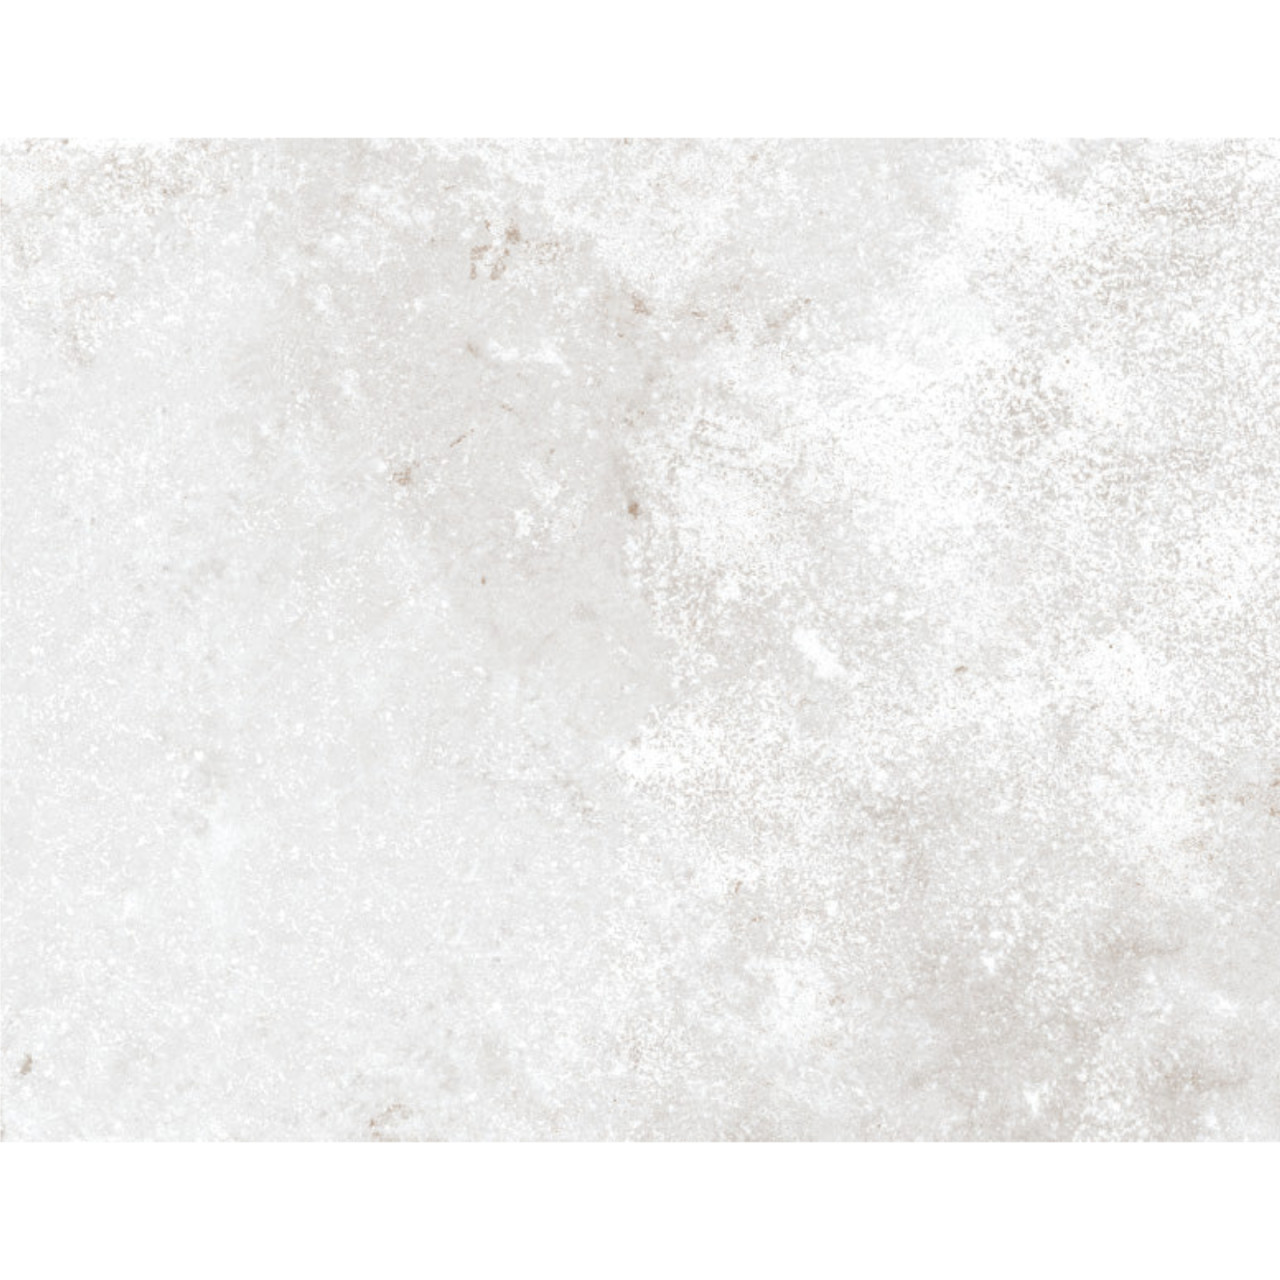 Pavimento non rettificato 26,1 x 52,2 cm gres porcellanato per esterno | materia white